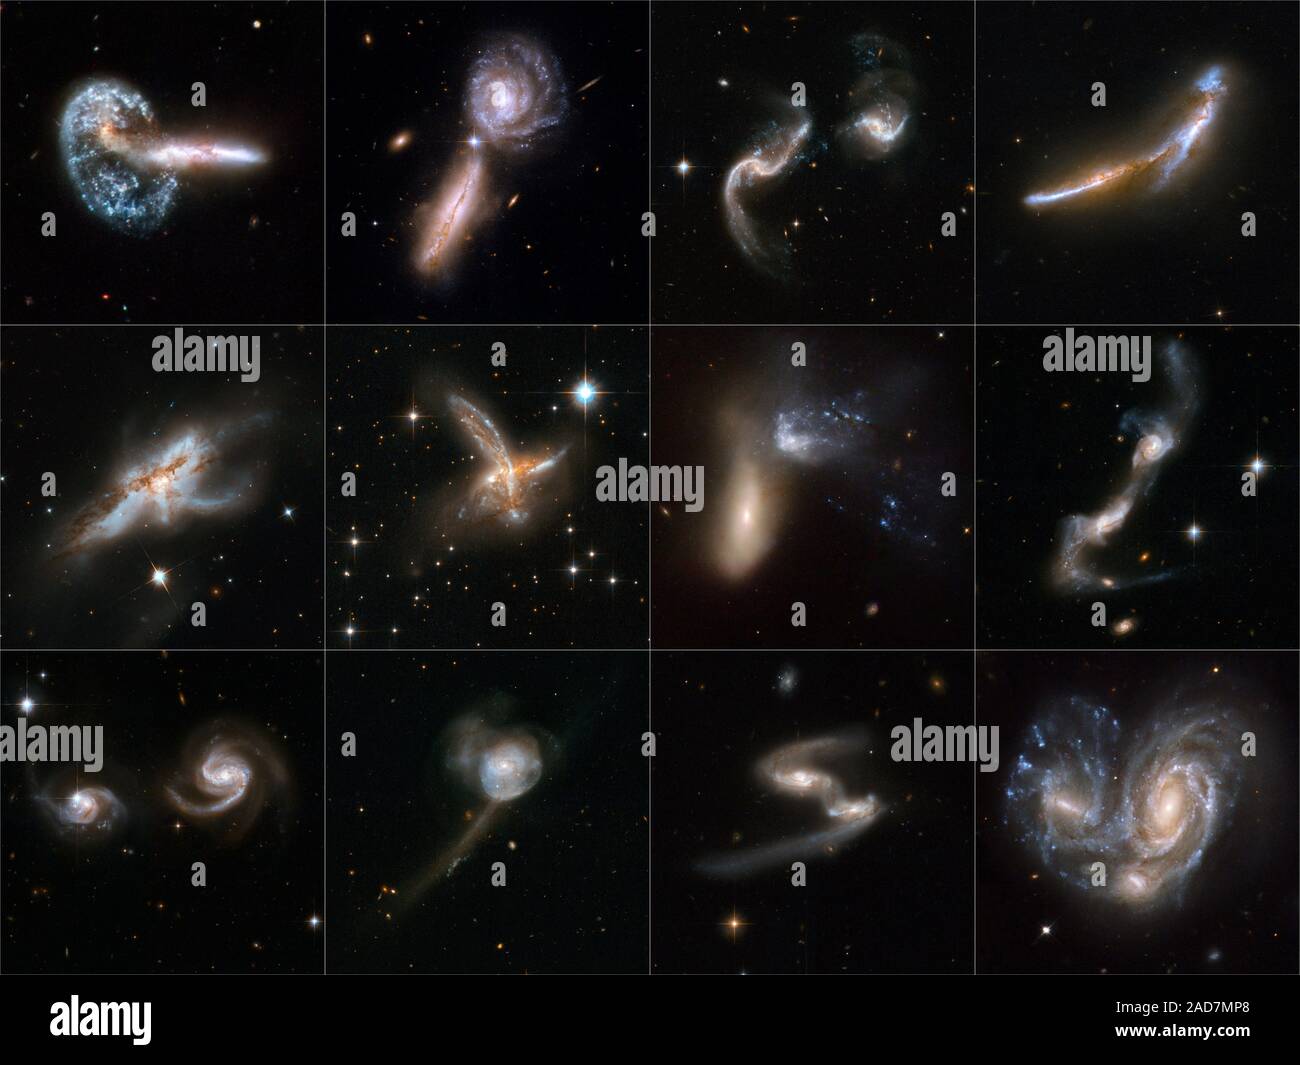 Astronomie Lehrbücher Regel Galaxien als biederen, einsam, und majestätische Insel Welten der funkelnden Sterne. Aber Galaxien haben eine dynamische Seite. Sie haben enge Begegnungen, die manchmal in großen Fusionen Ende und ausufernden Standorte der neue Star der Geburt, da die kollidierenden Galaxien in den wundersamen neuen Formen verwandeln. Heute, in der Feier des 18. Jahrestages der Markteinführung des Hubble Space Telescope, 59 Ansichten der kollidierenden Galaxien bilden die größte Sammlung von Hubble Bilder überhaupt für die Öffentlichkeit freigegeben. Diese neue Hubble Atlas zeigt drastisch, wie Galaxy Kollisionen eine bemerkenswerte var produzieren Stockfoto